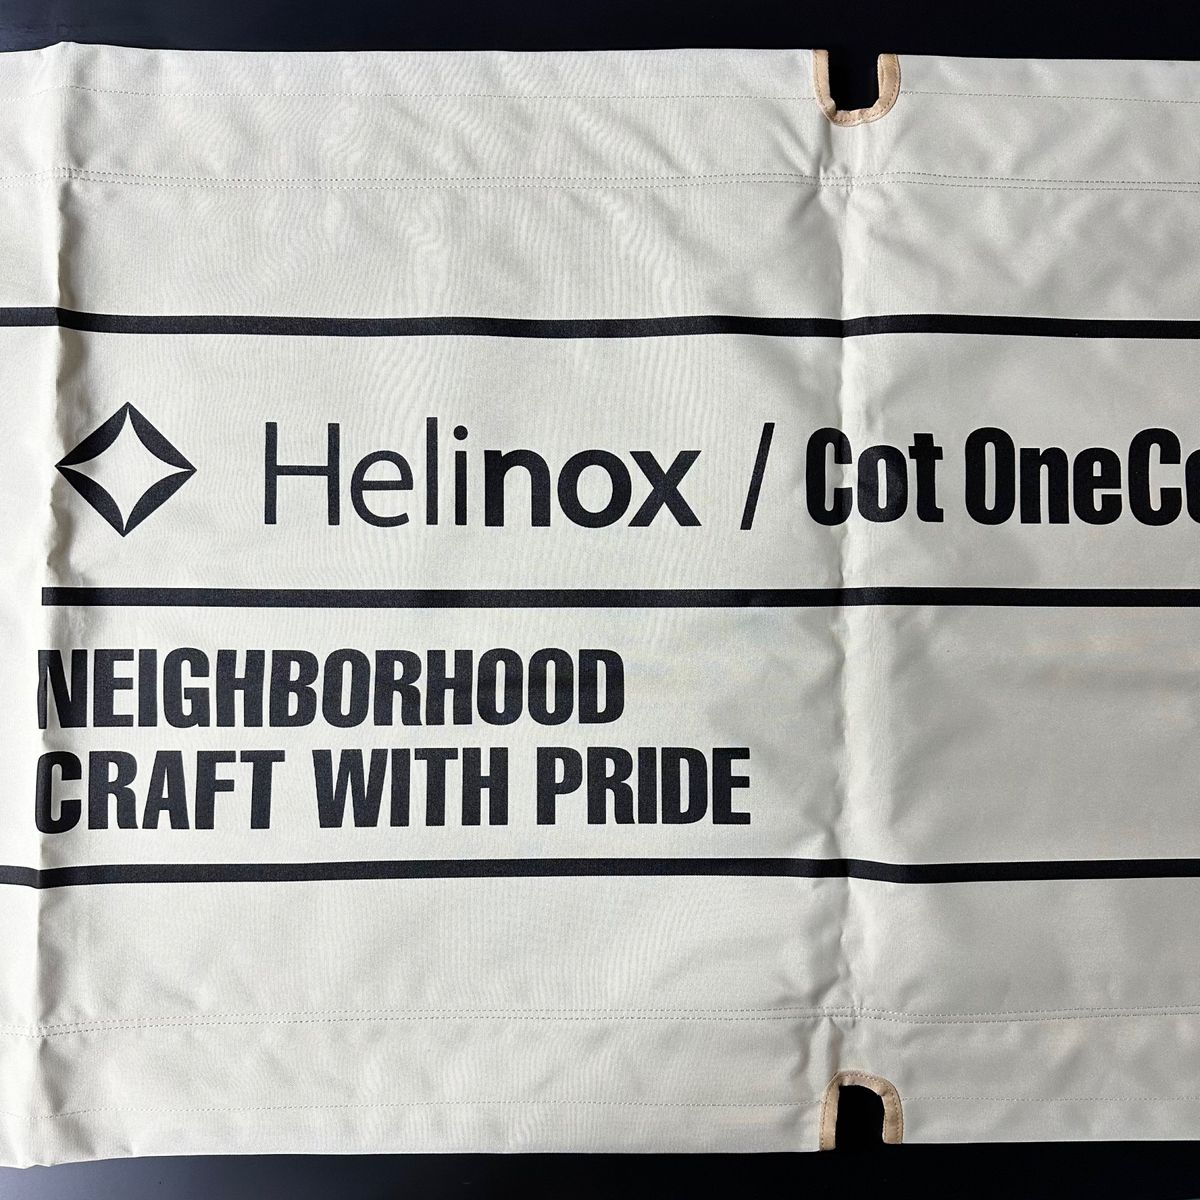 ネイバーフッド x ヘリノックス コット neighborhood x helinox cot